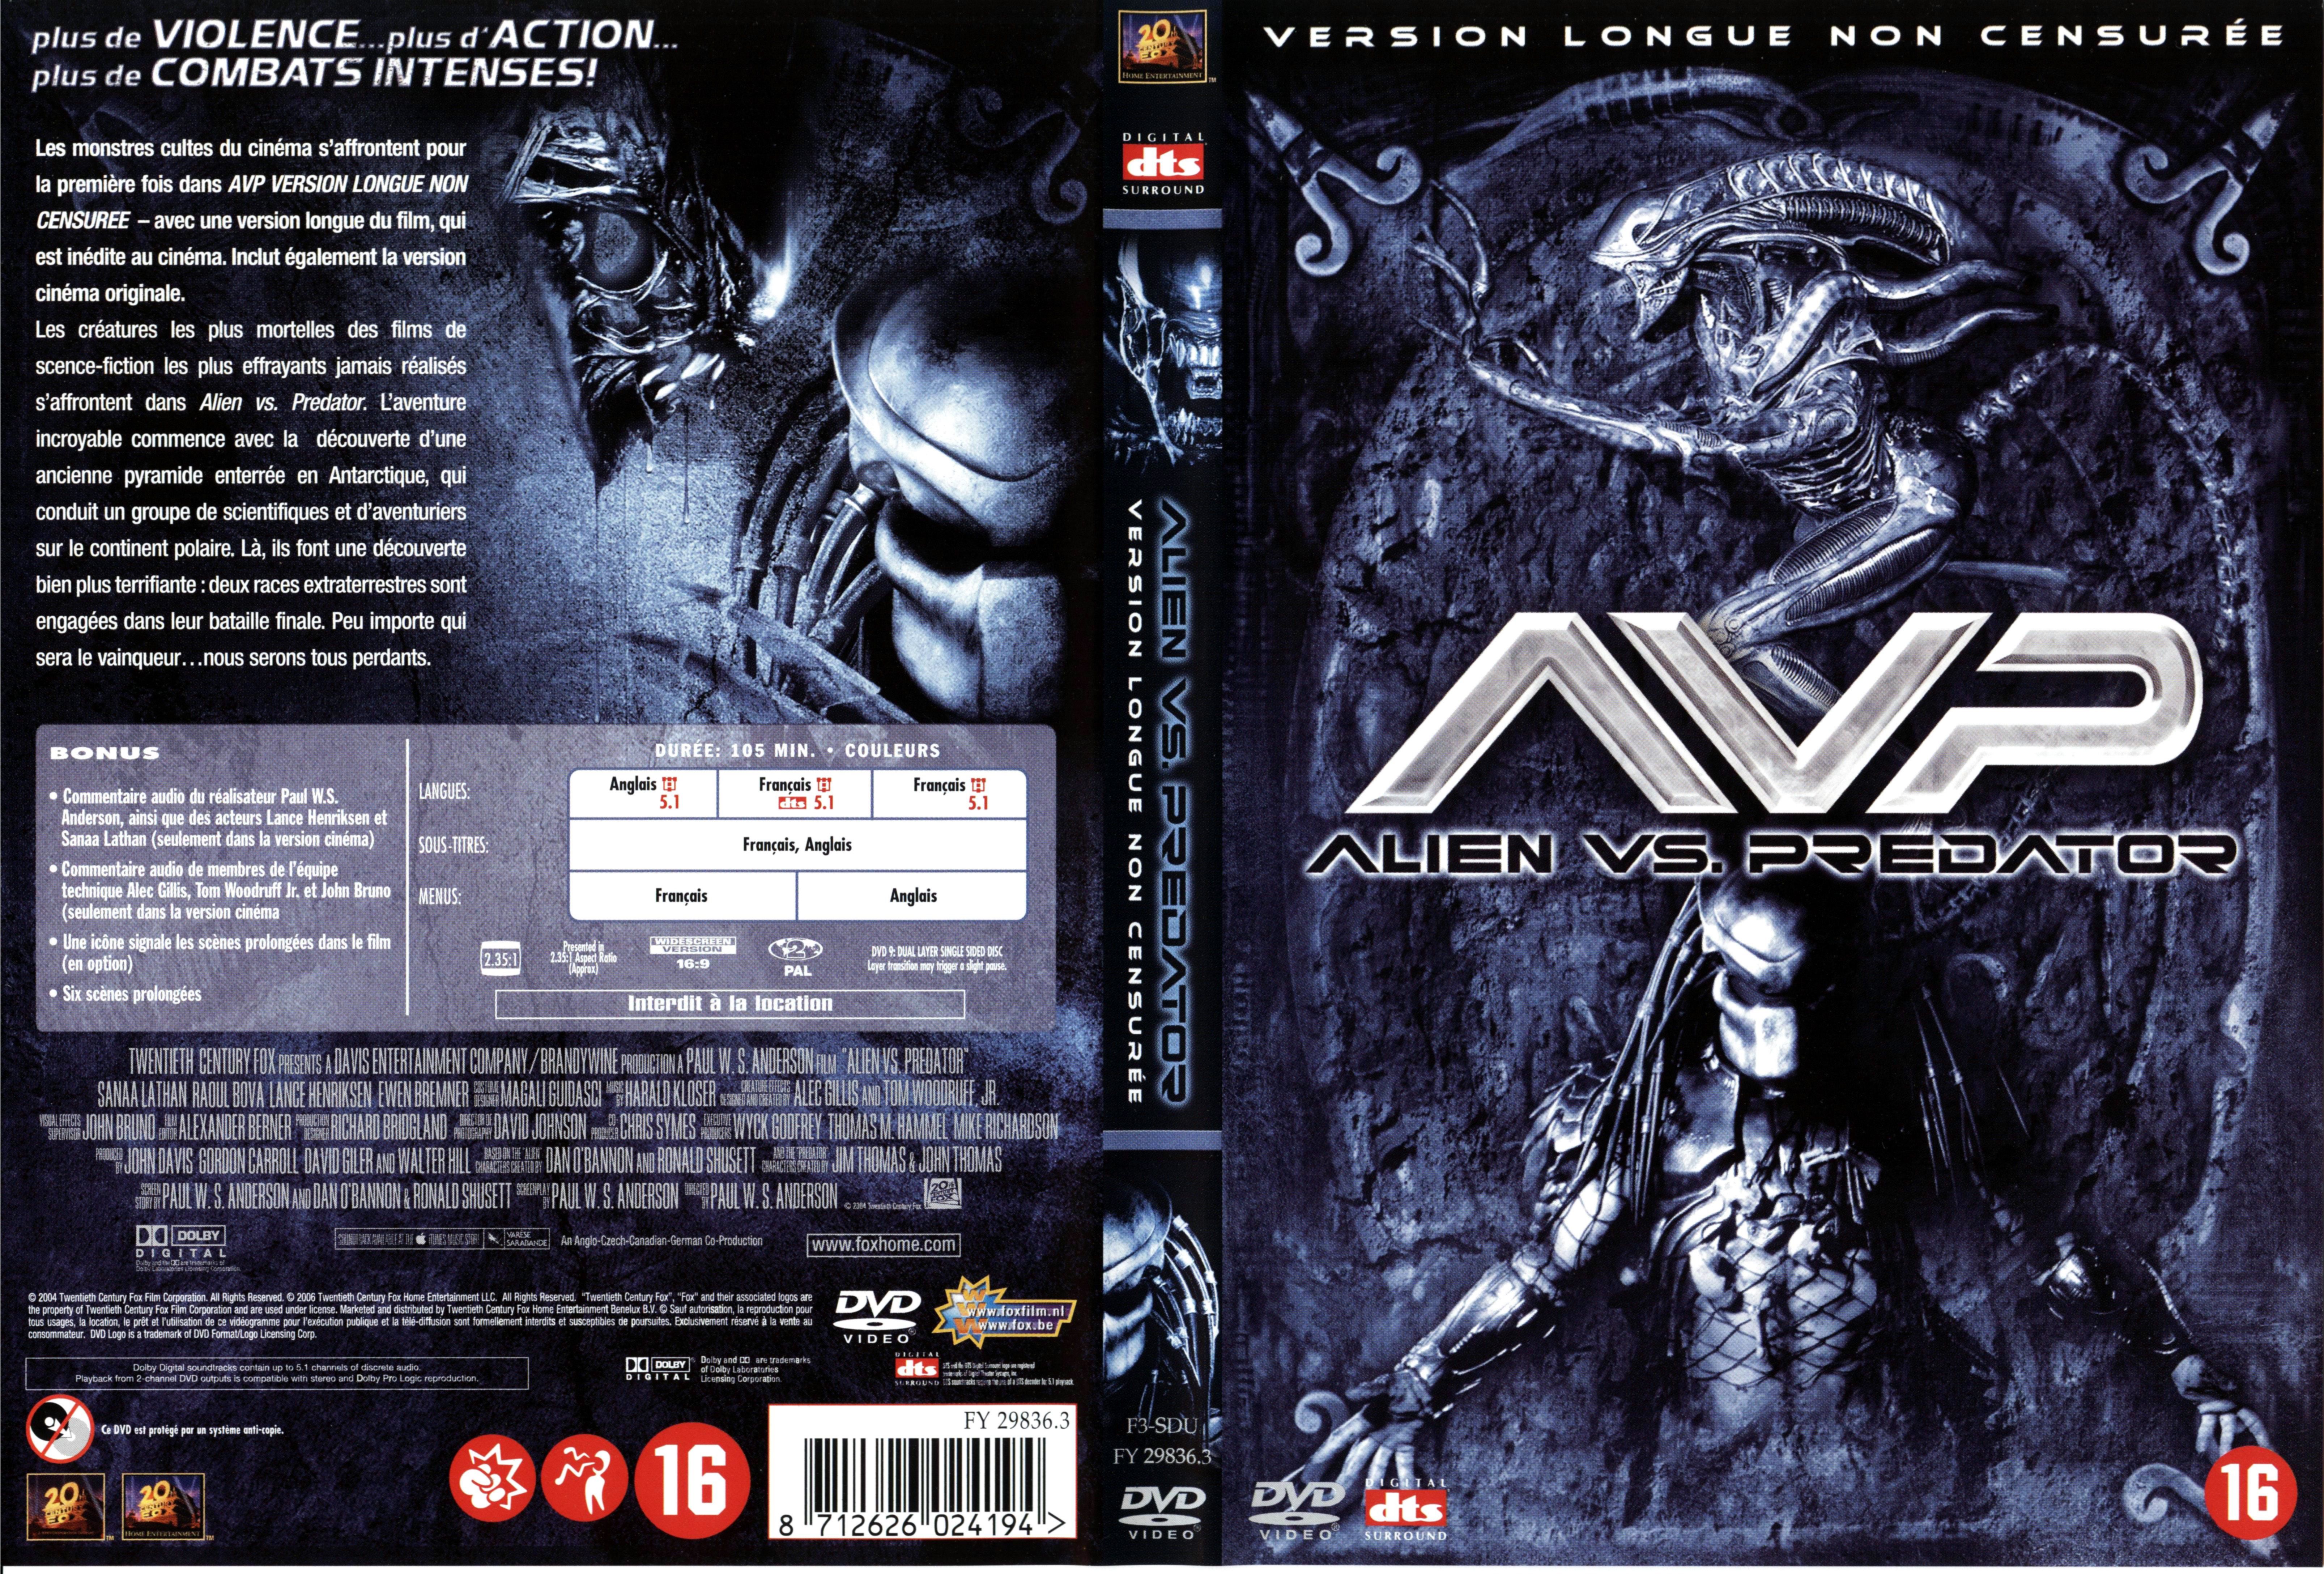 Jaquette DVD Alien vs Predator v5